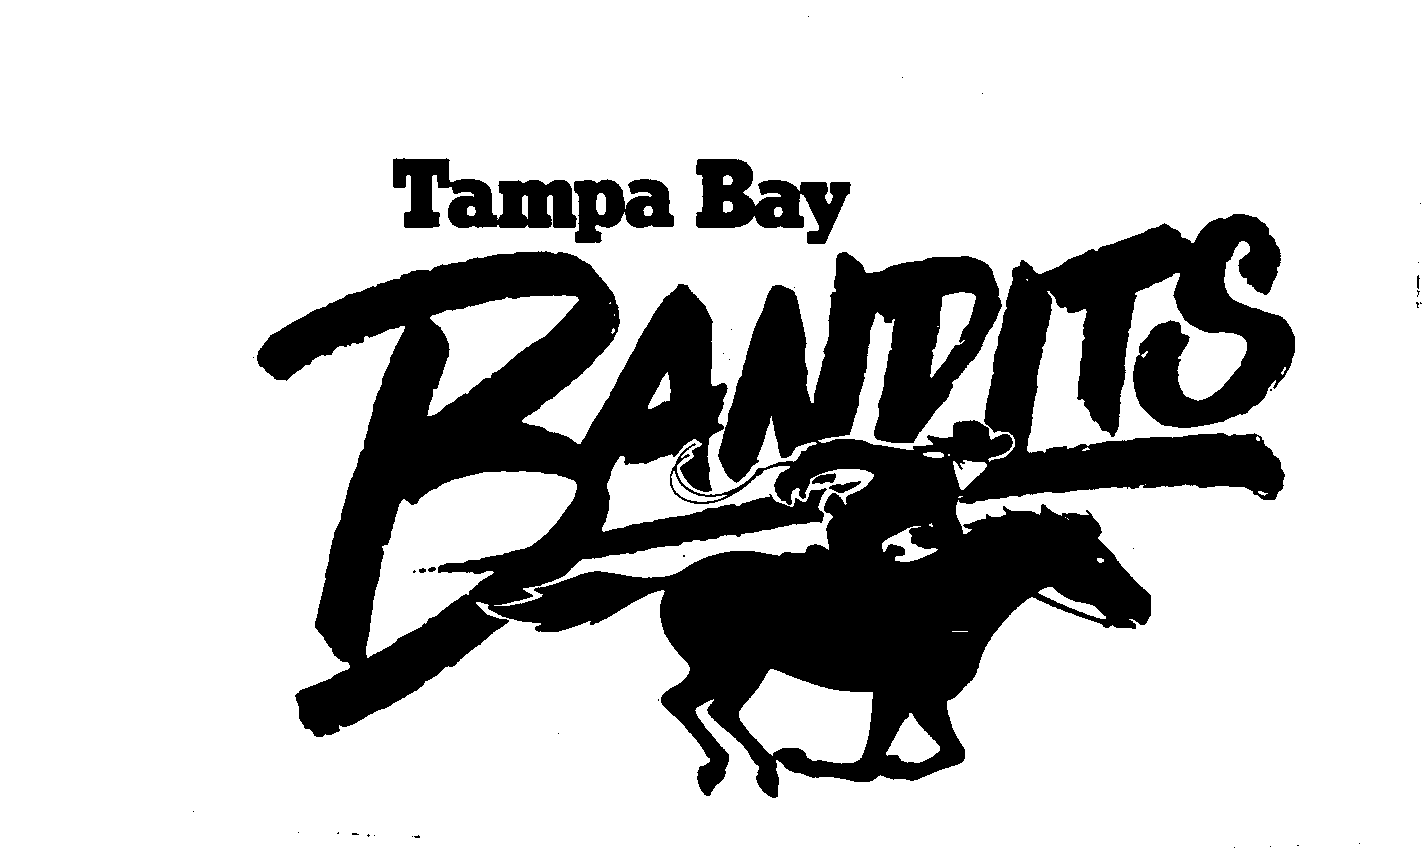 Trademark Logo TAMPA BAY BANDITS